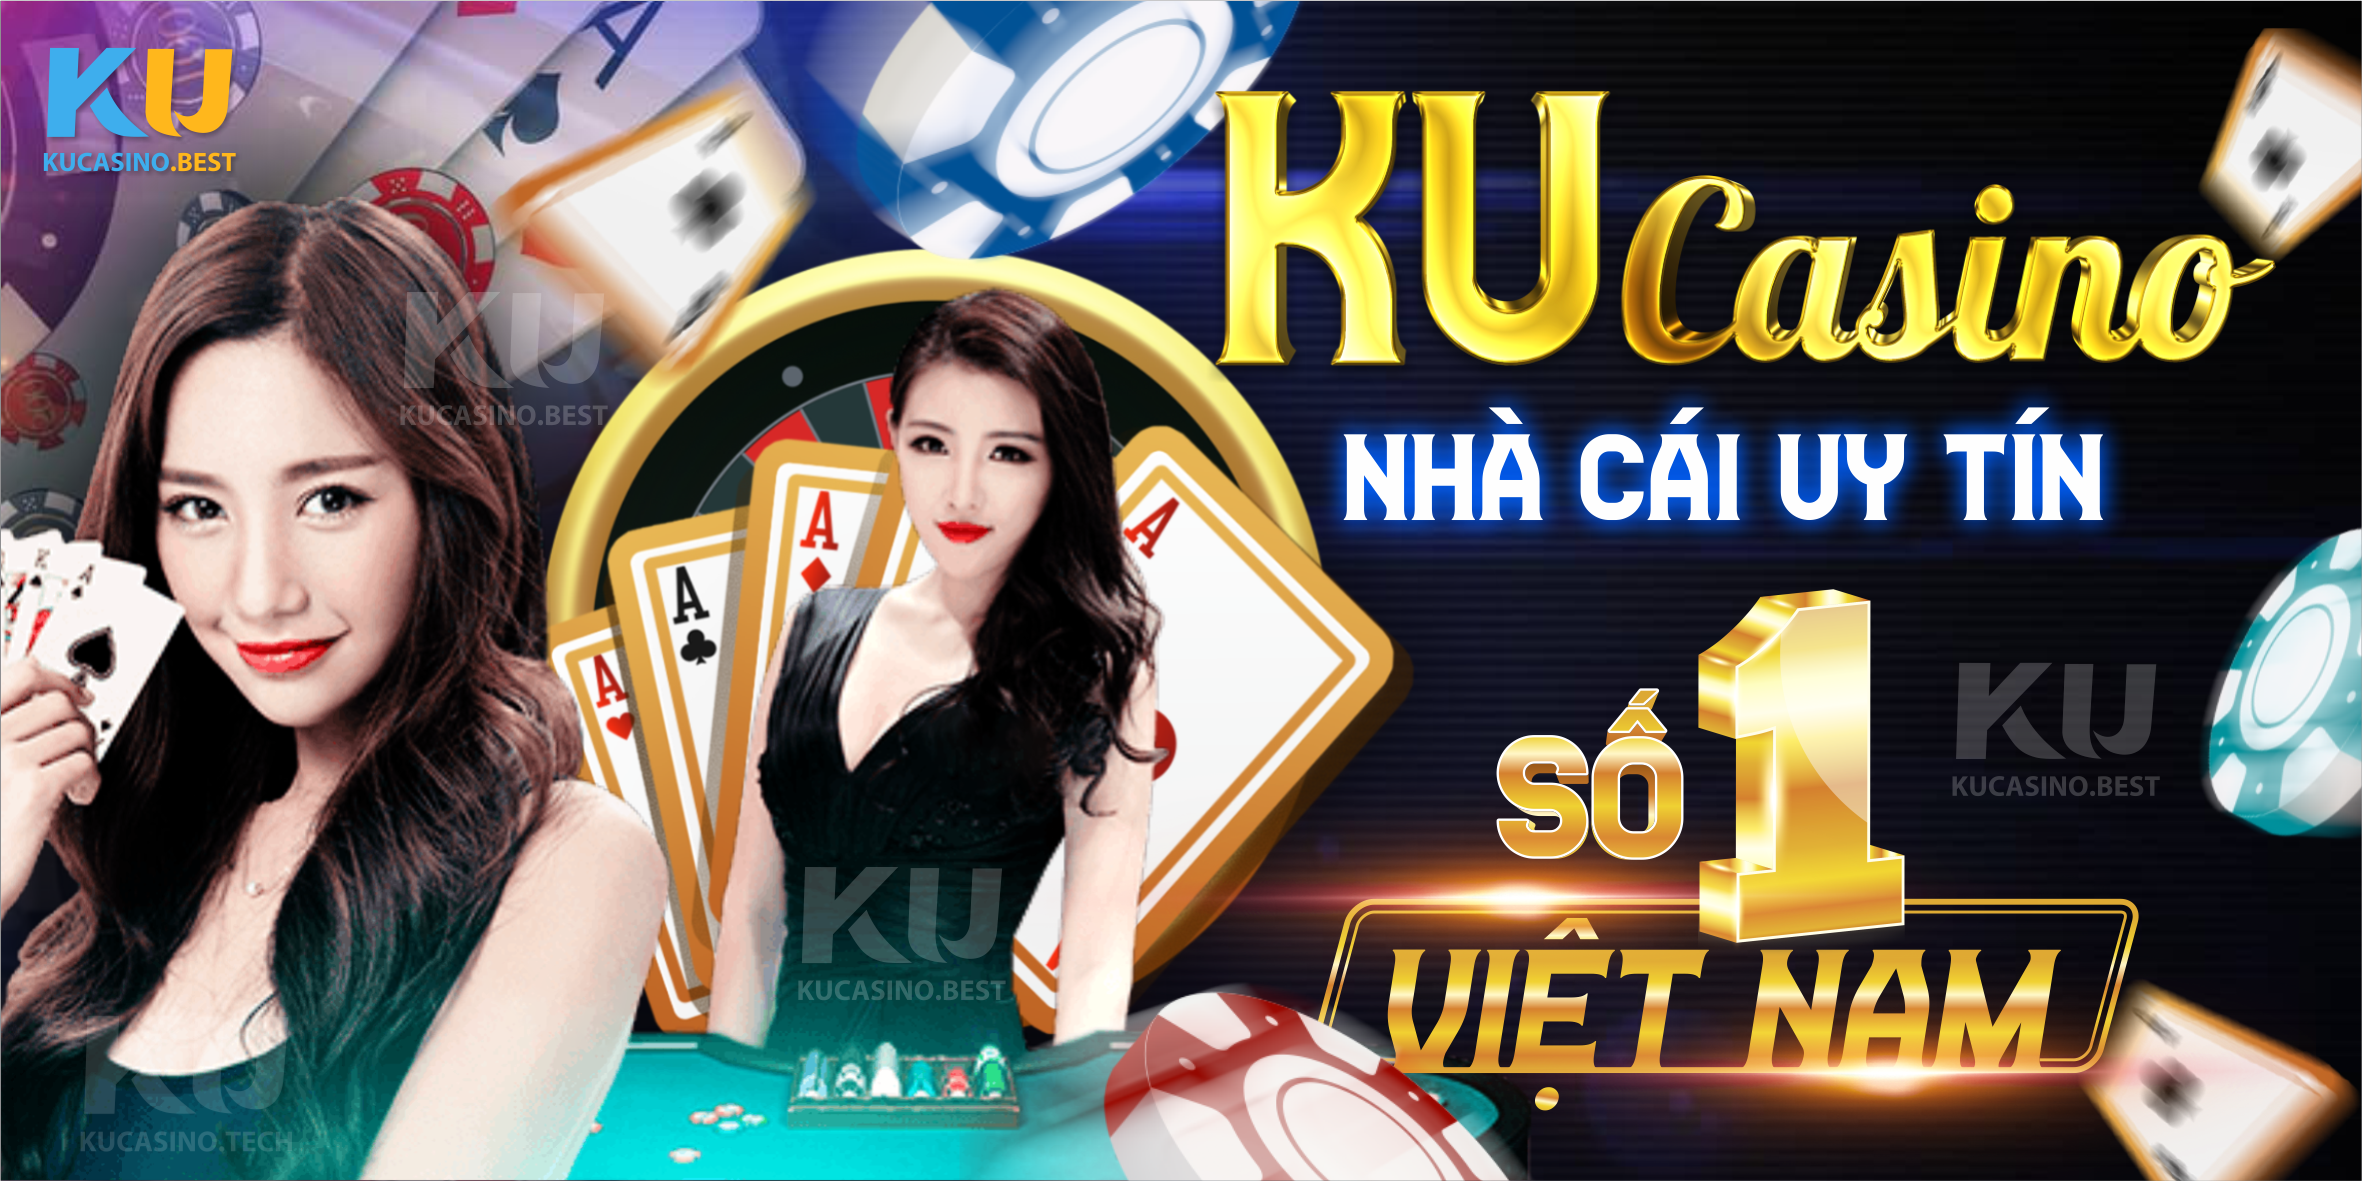 Ku Casino - Nhà cái cá cược uy tín số 1 hiện nay